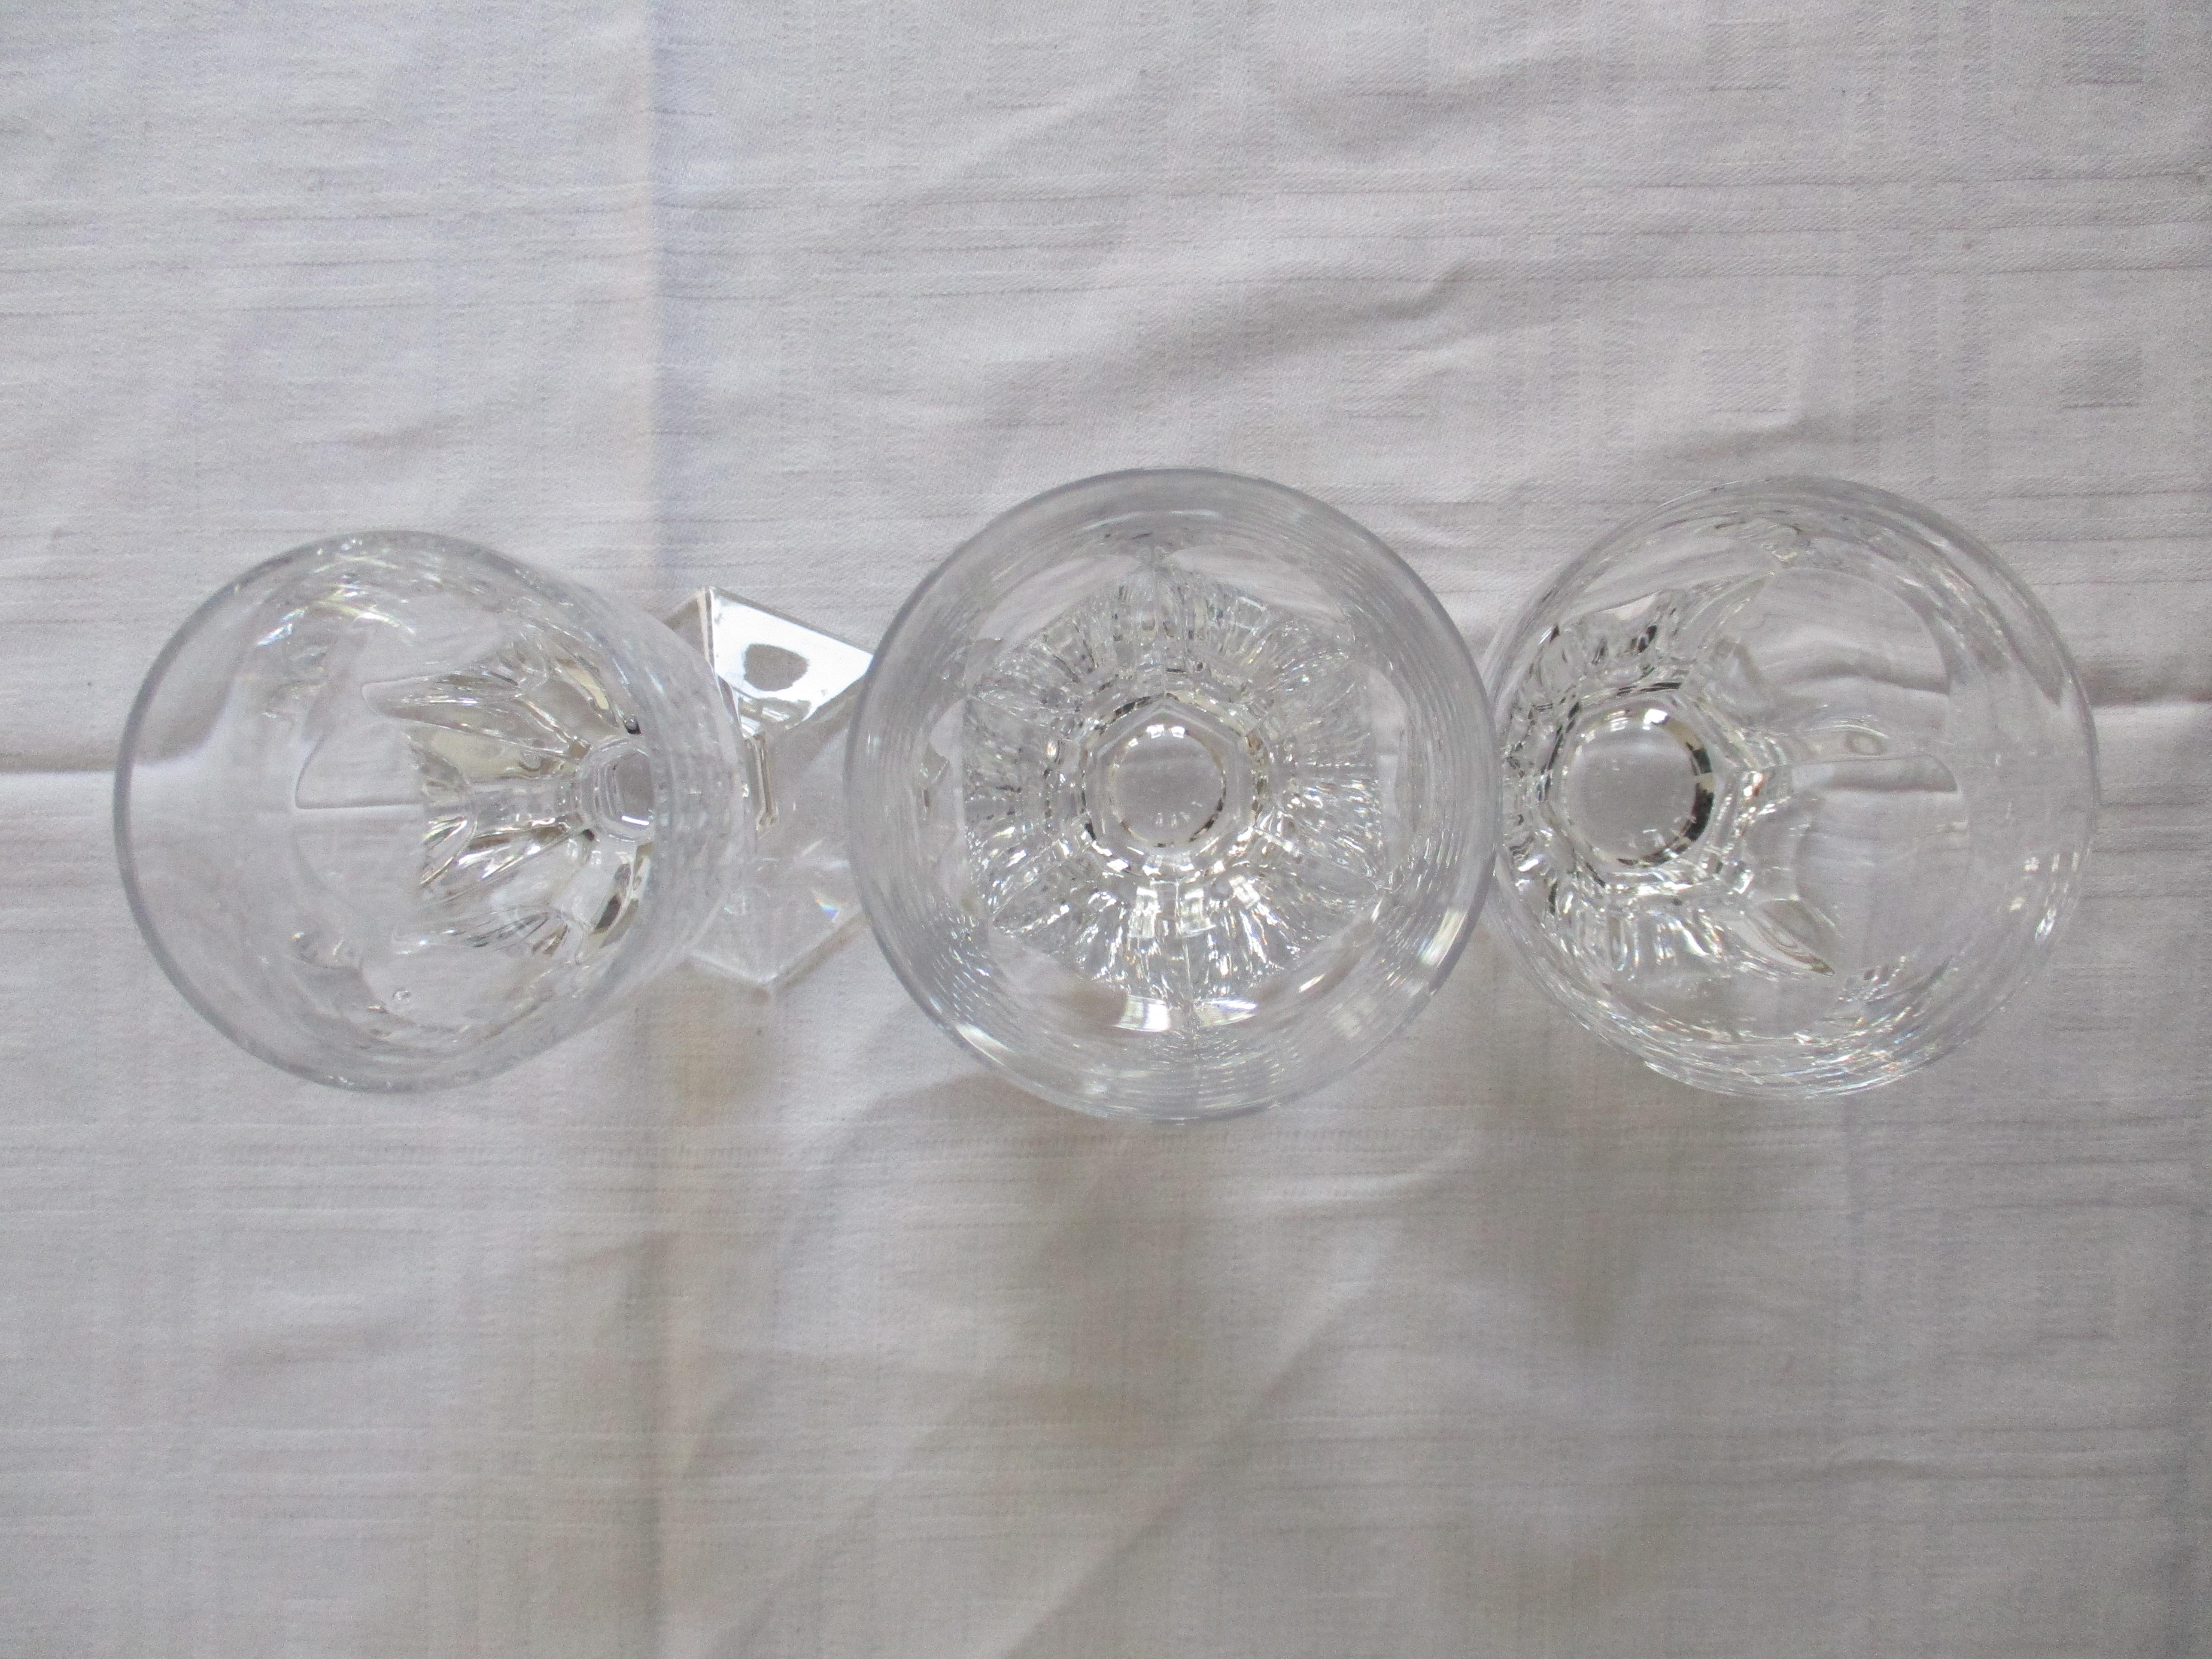 Trois verres de Richard Ginori. Magnifique ensemble de verrerie vintage. Estampillé dans le pied des lunettes. 